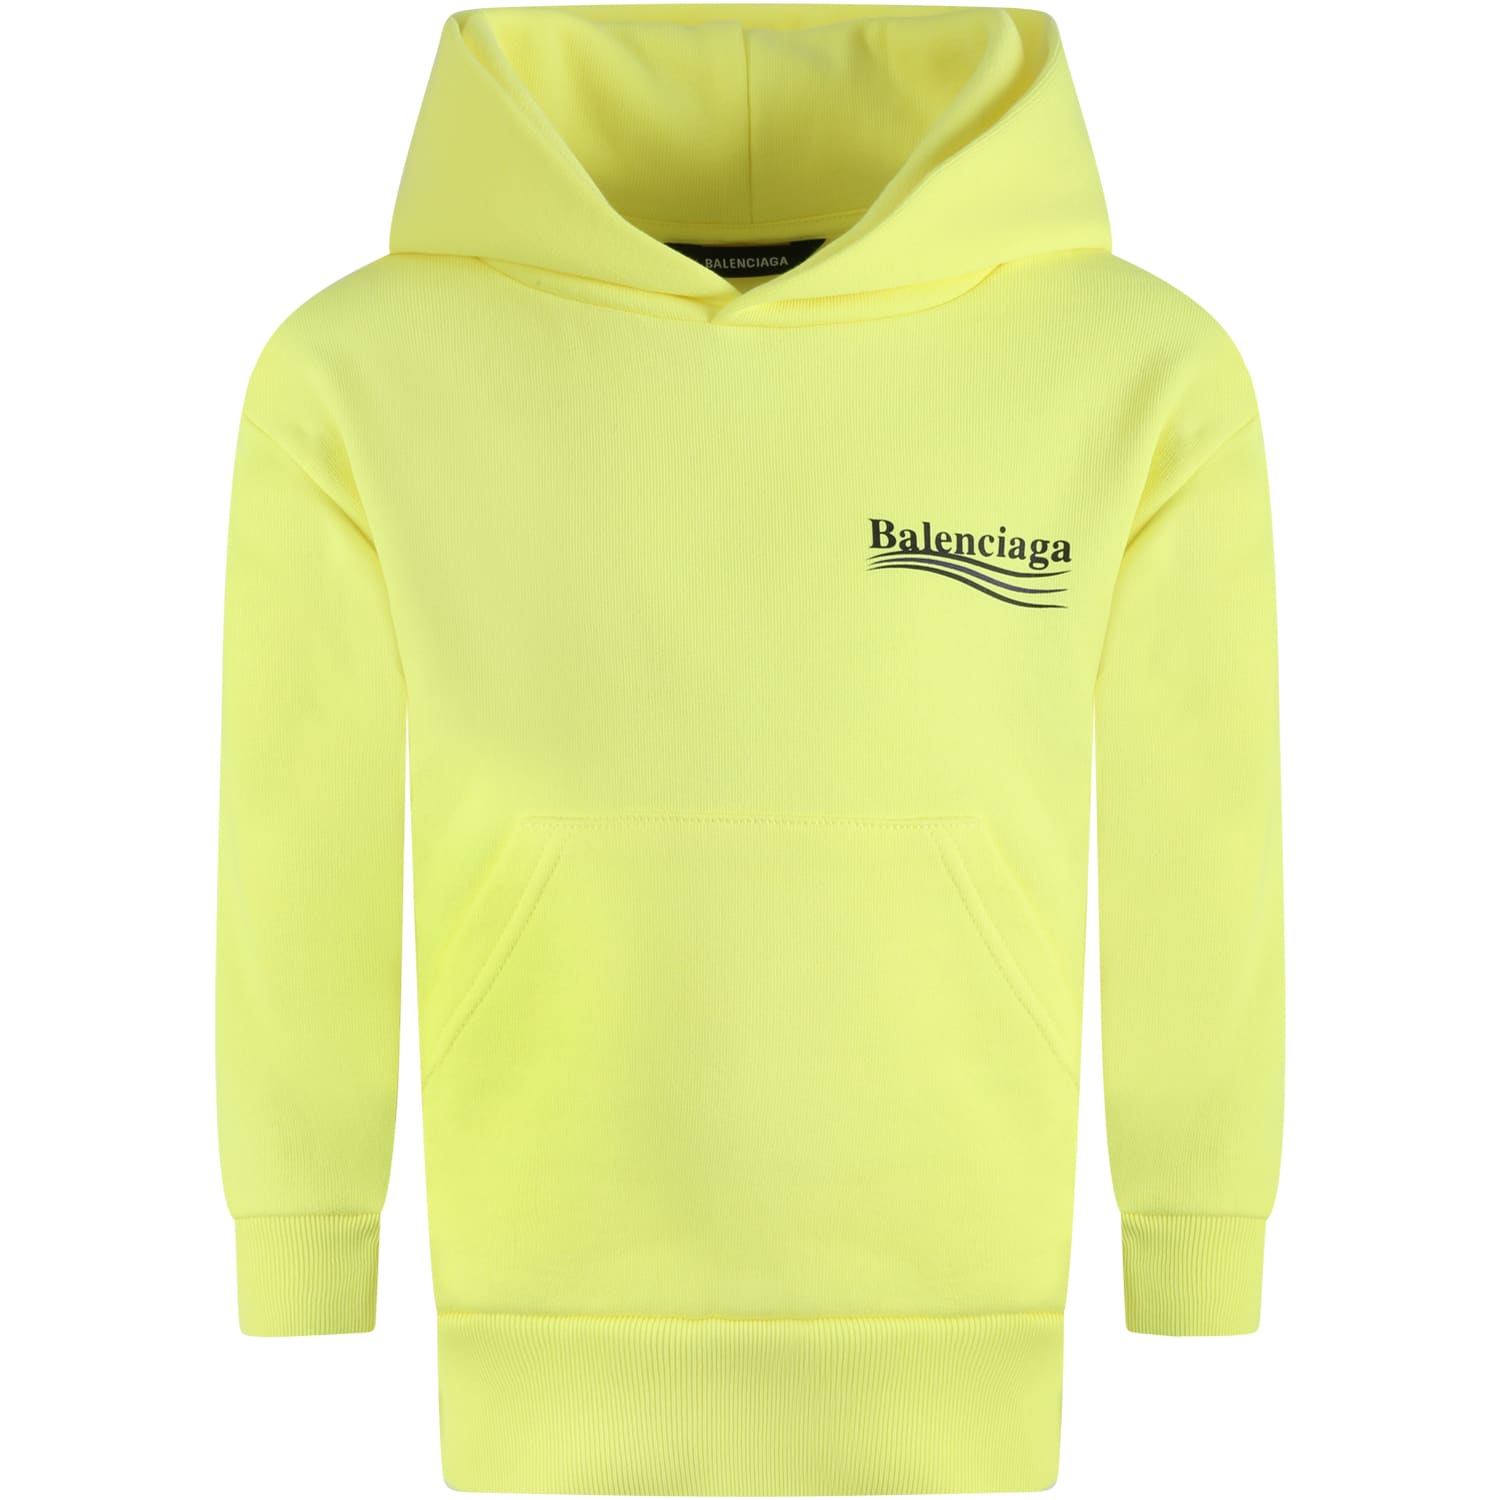 balenciaga sweatshirt yellow